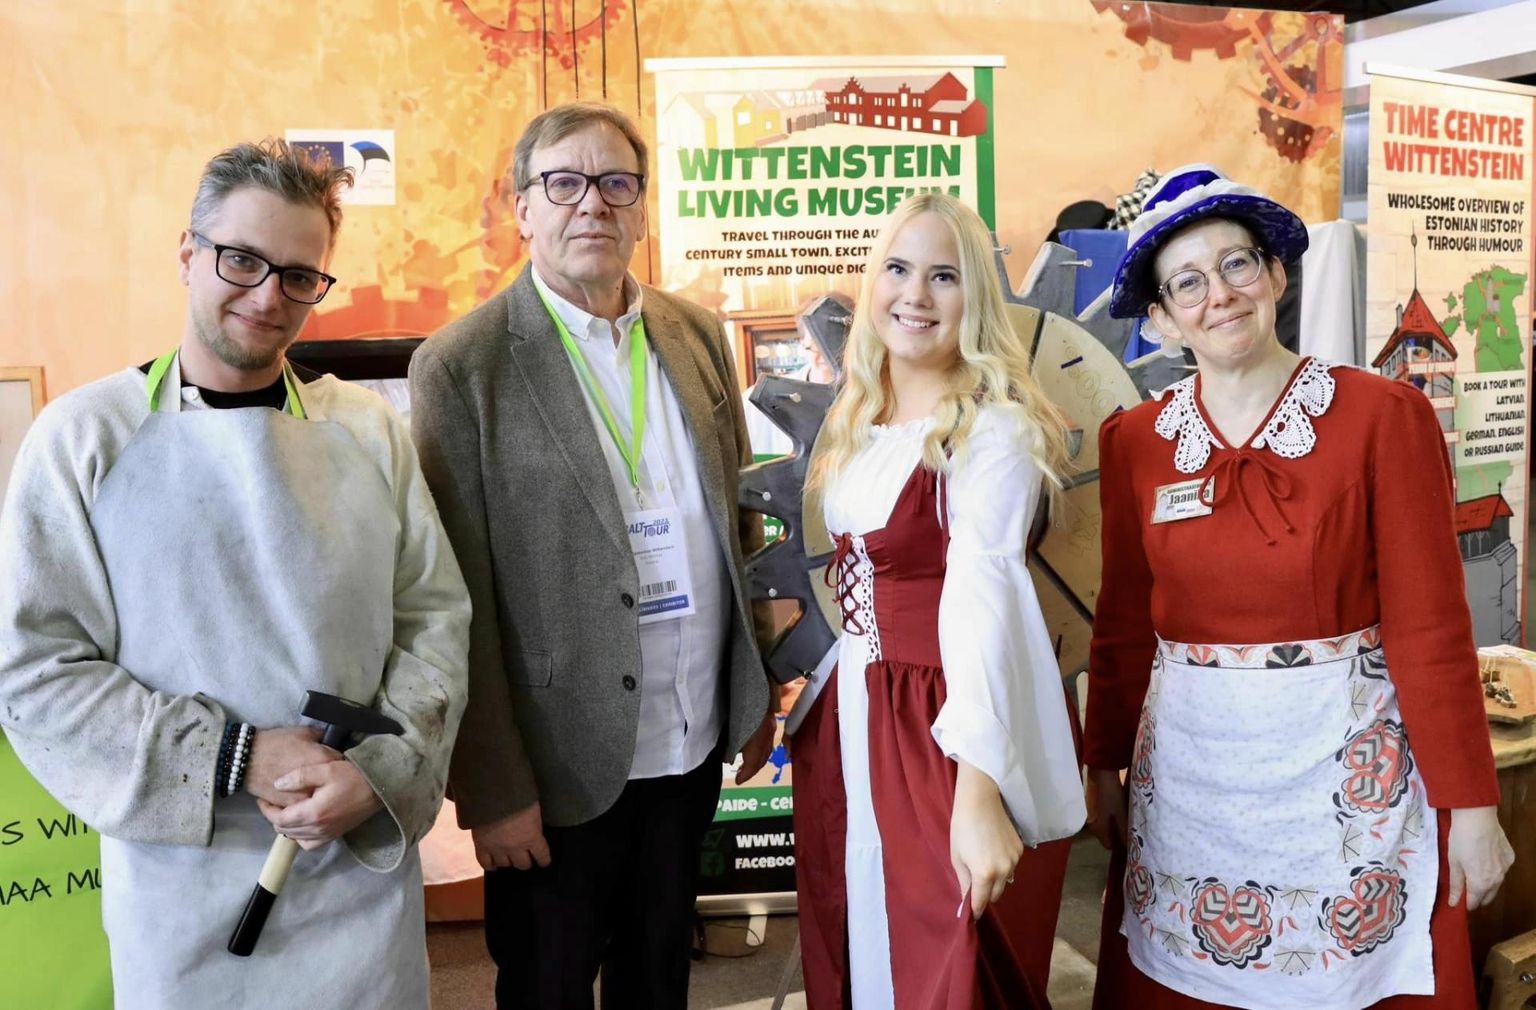 Wittensteini esindus Tarmo Põldroo (vasakult), Ants Hiiemaa, Eliis Õunapuu ja Jaanika Reismann tutvustasid põnevate tegevuste kaudu Riia turismimessil Balttours Kesk-Eestit.